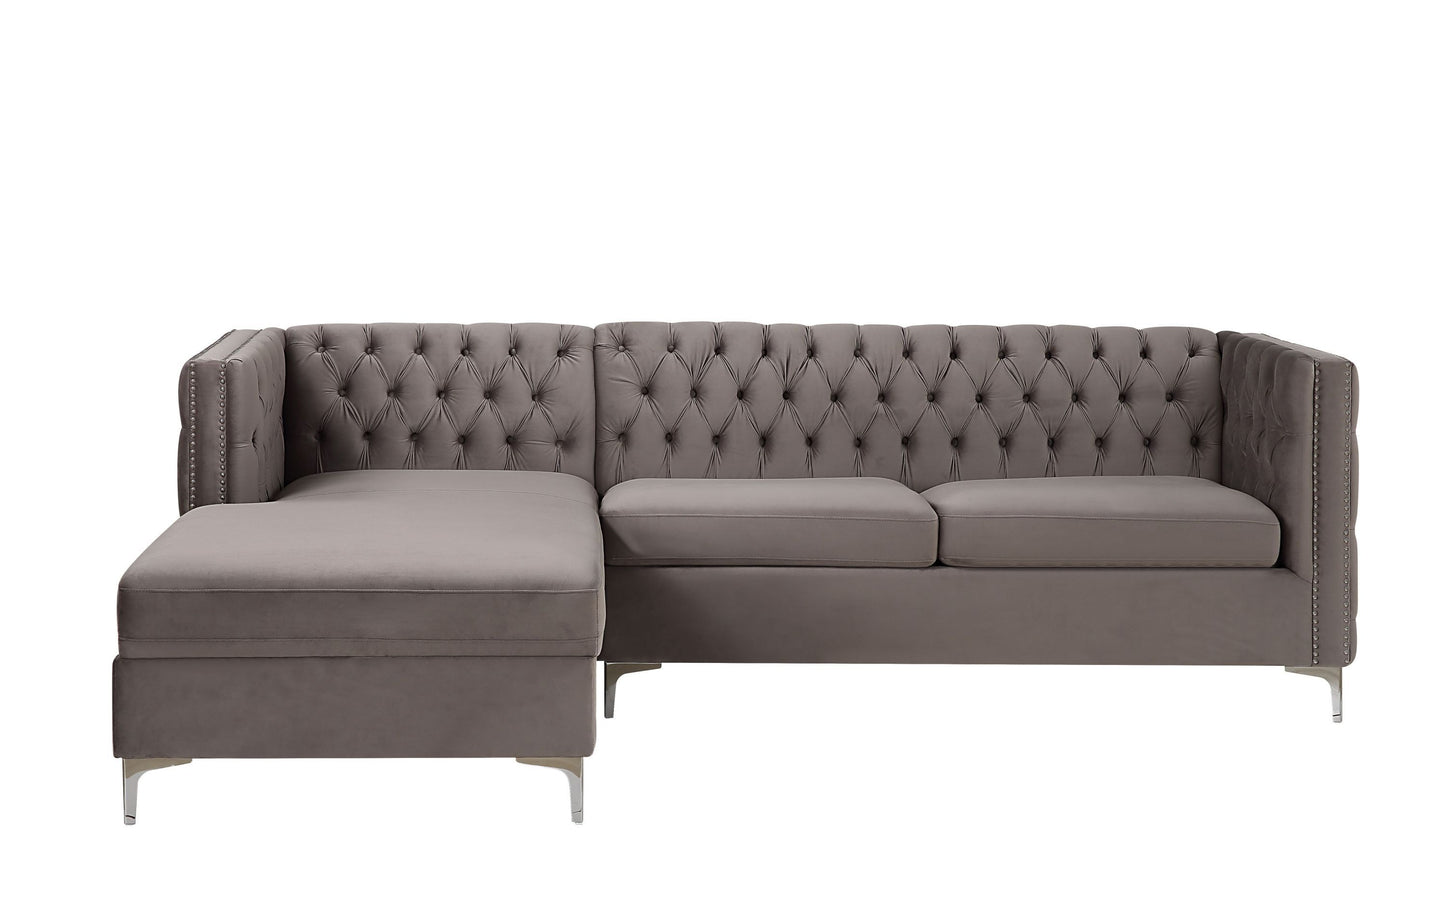 ACME Sullivan Sectional Sofa, Gray Velvet 55495 - Enova Luxe Home Store